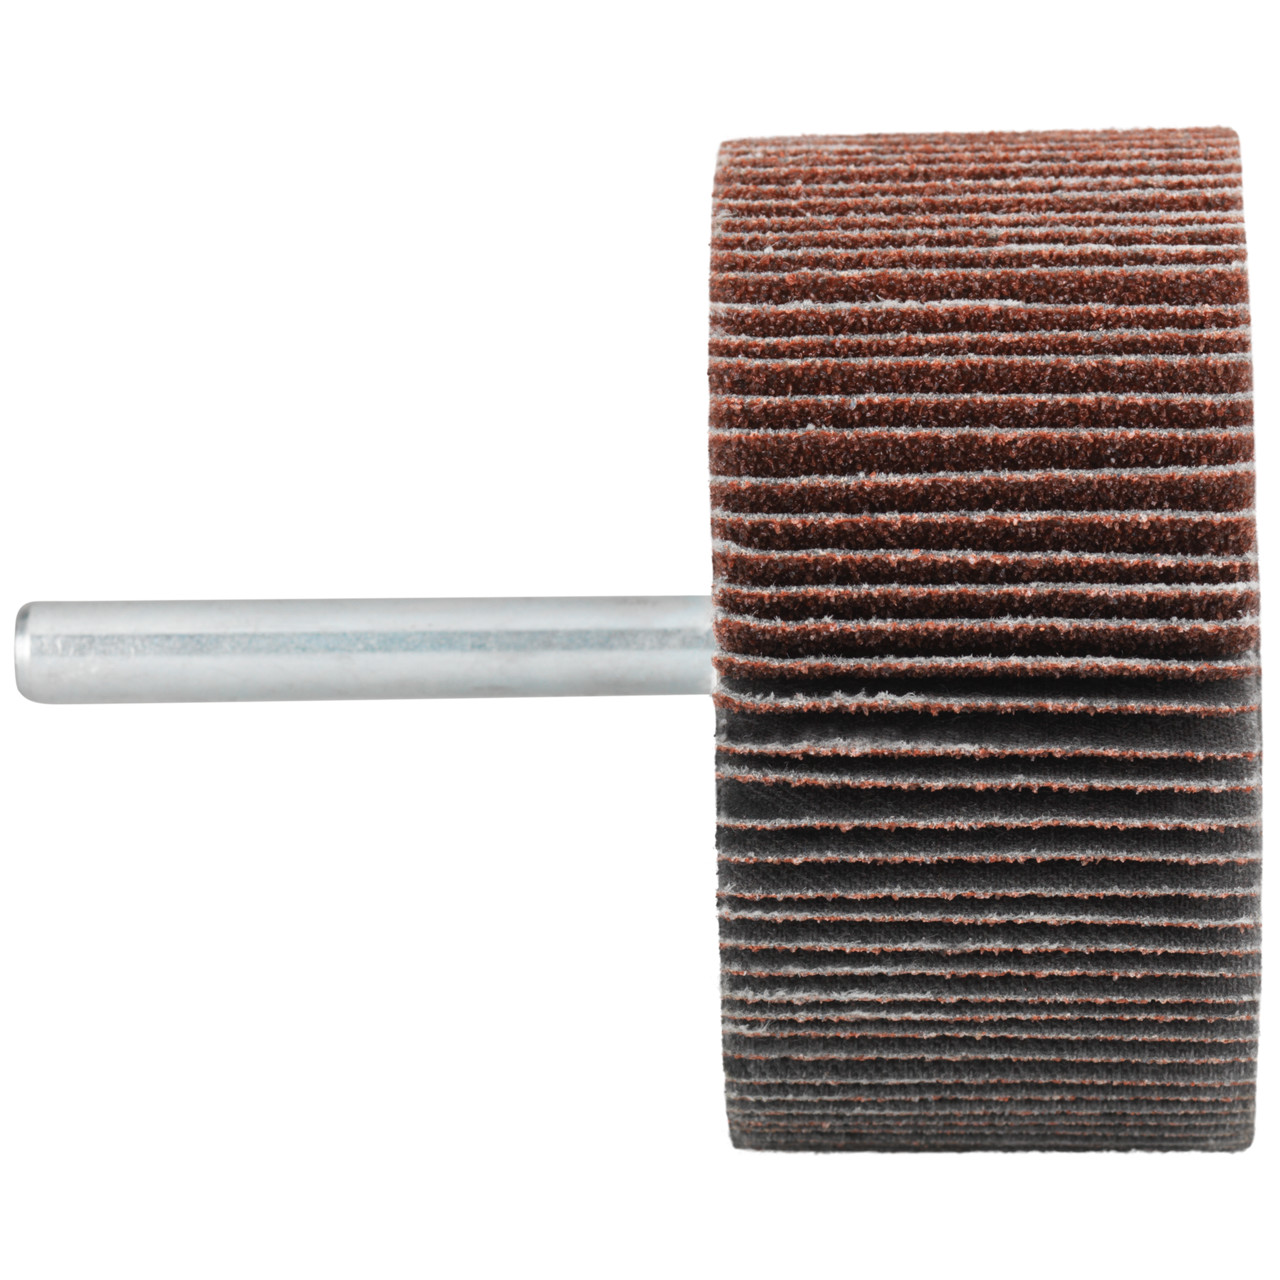 Tyrolit A-P01 C X Pennen DxD 50x20 Voor staal, roestvast staal en non-ferrometalen, P40, vorm: 52LA, Art. 816928